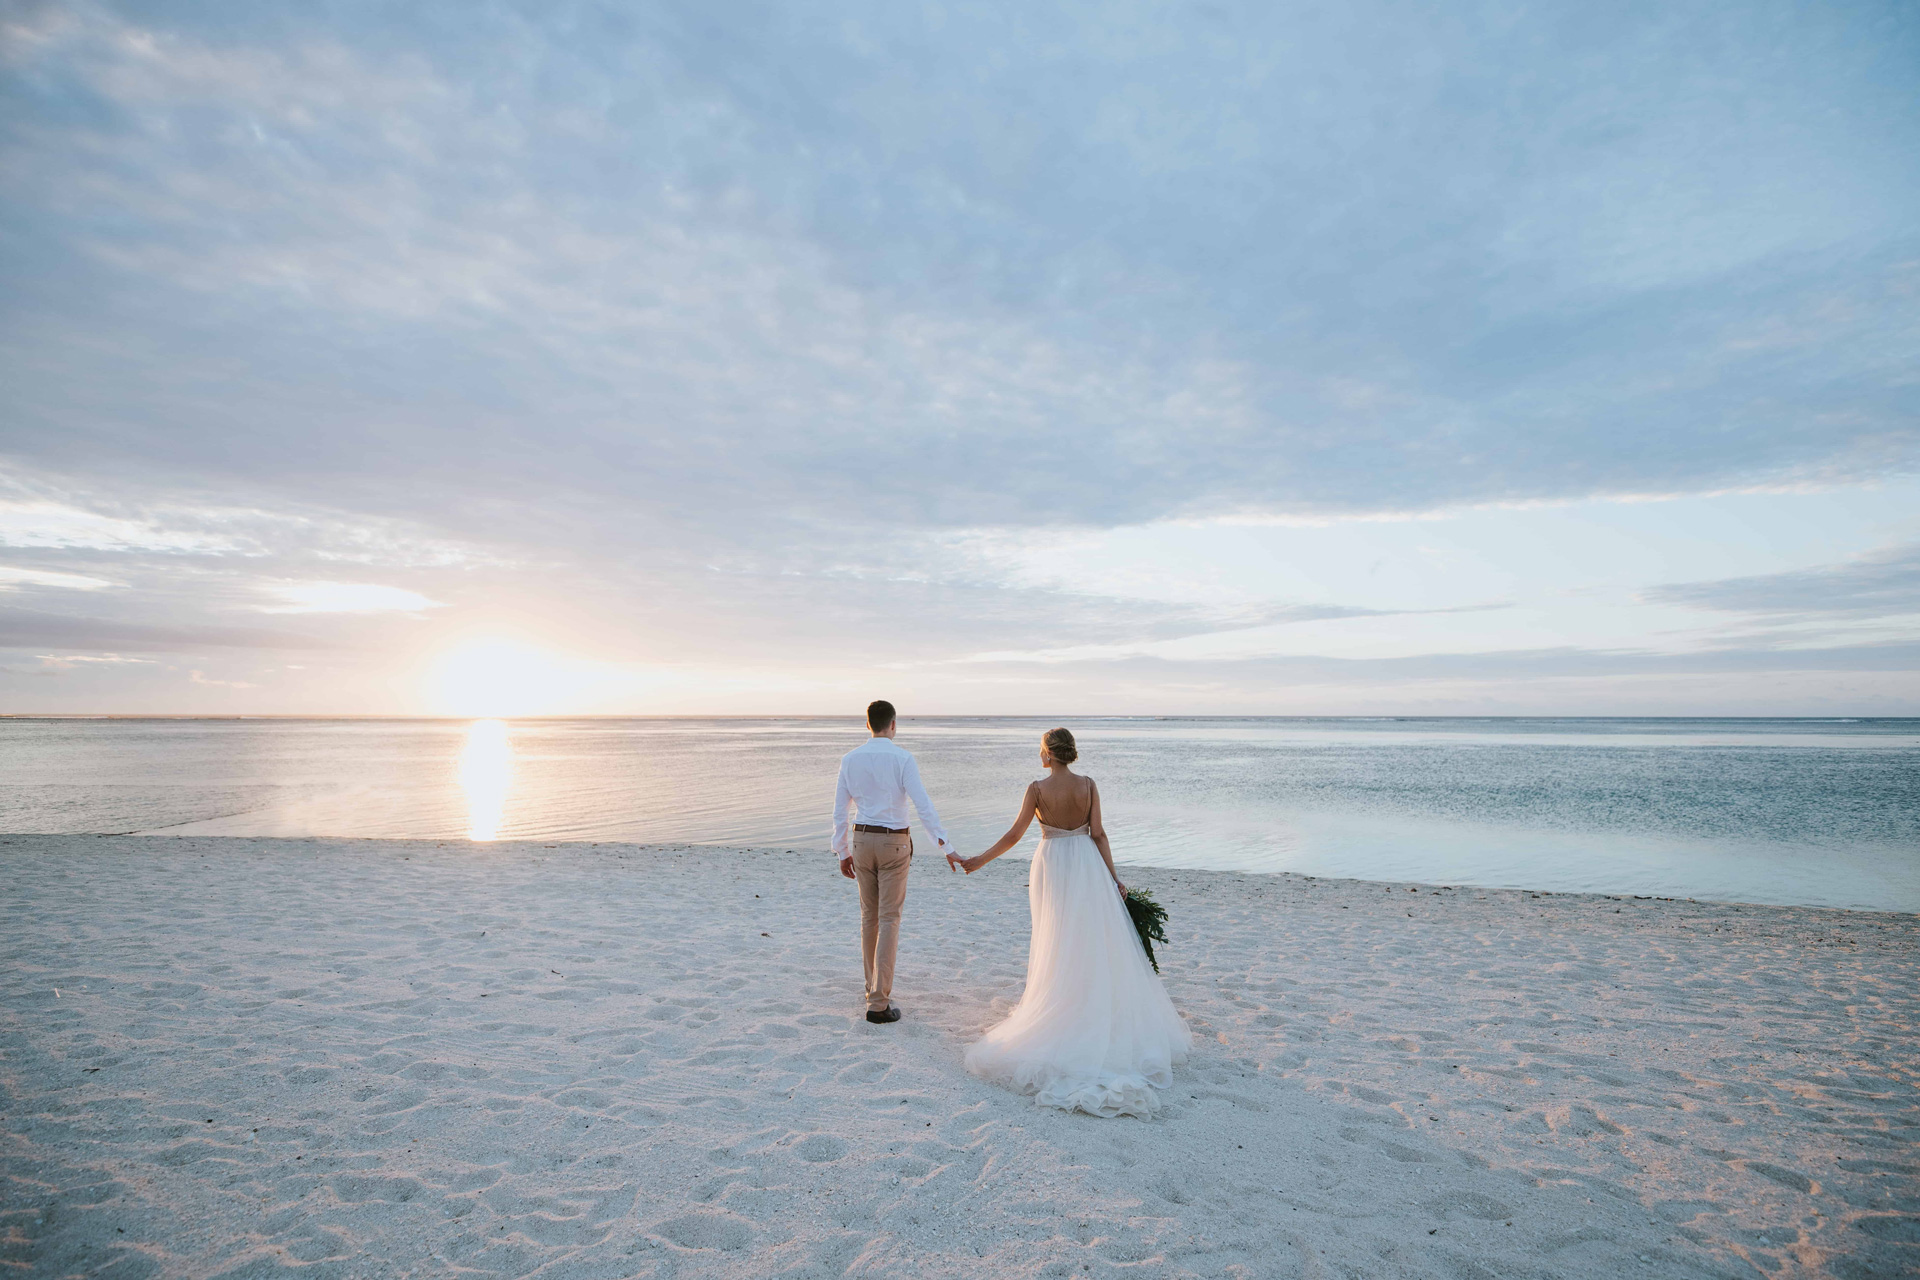 Matrimonio in spiaggia, come organizzarlo